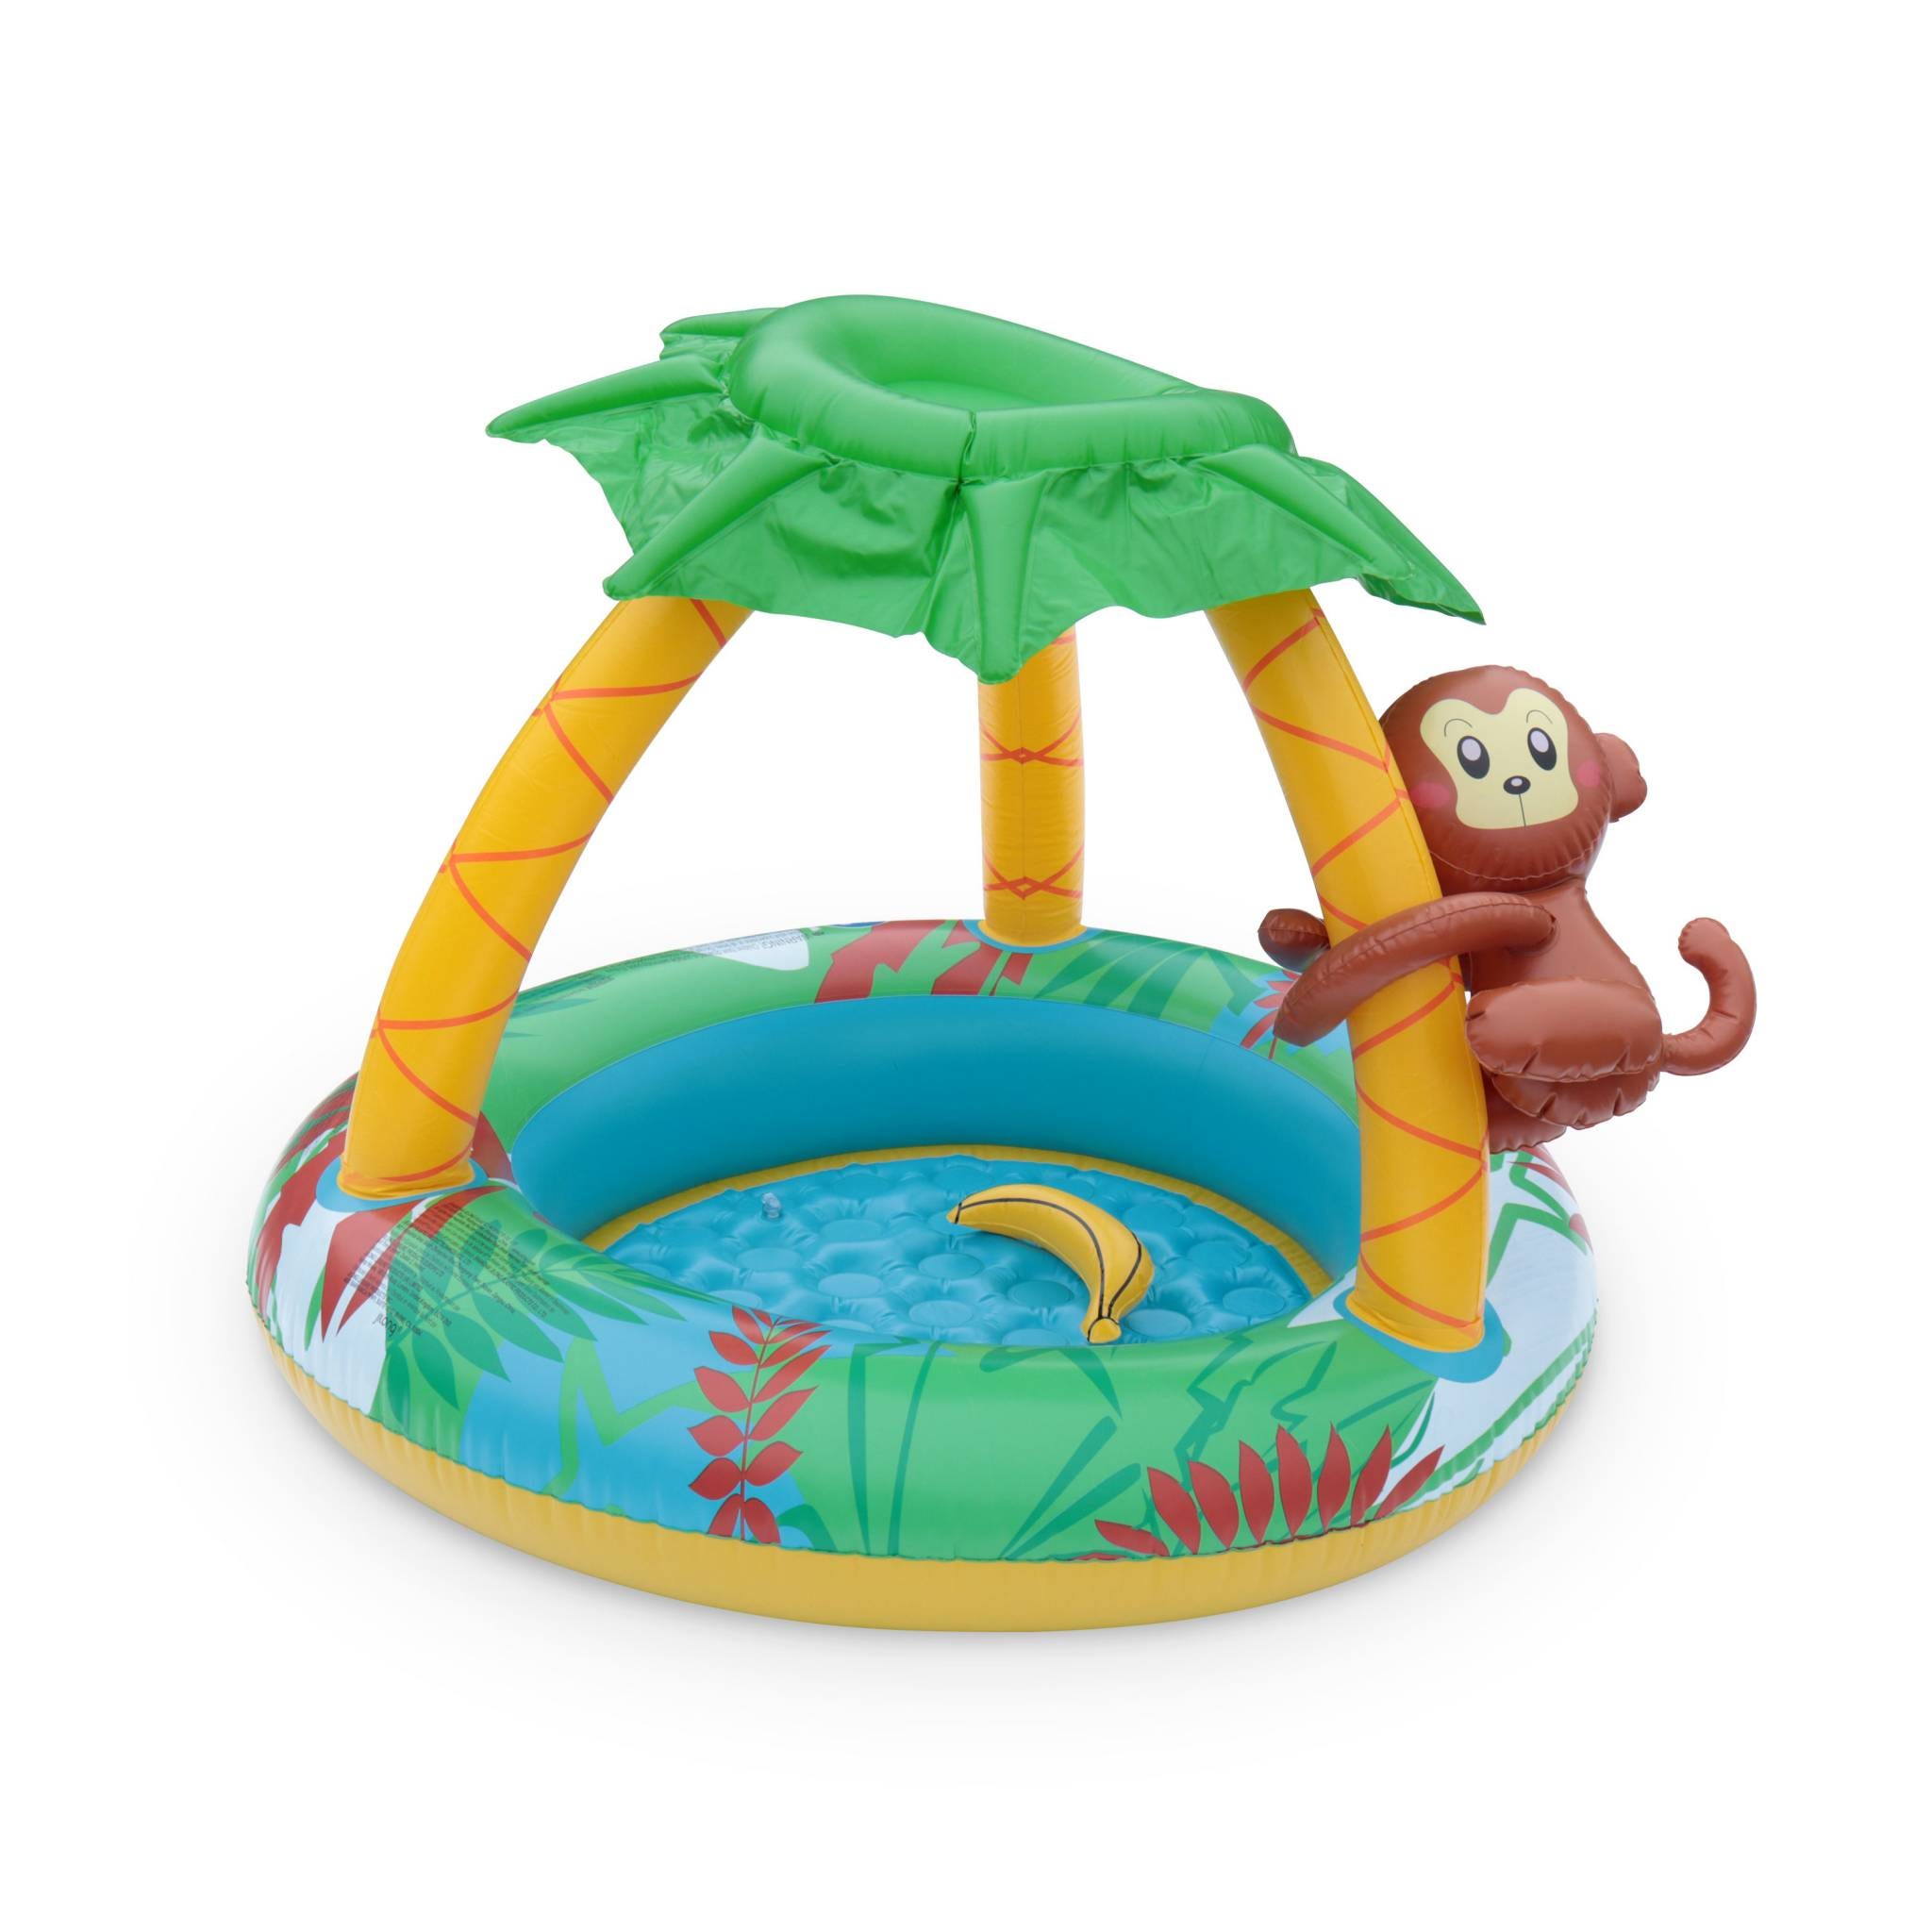 Aire de jeu gonflable Intex piscine gonflable enfant / bébé couverte avec  pare-soleil amovible 157 x 157 x 122 cm